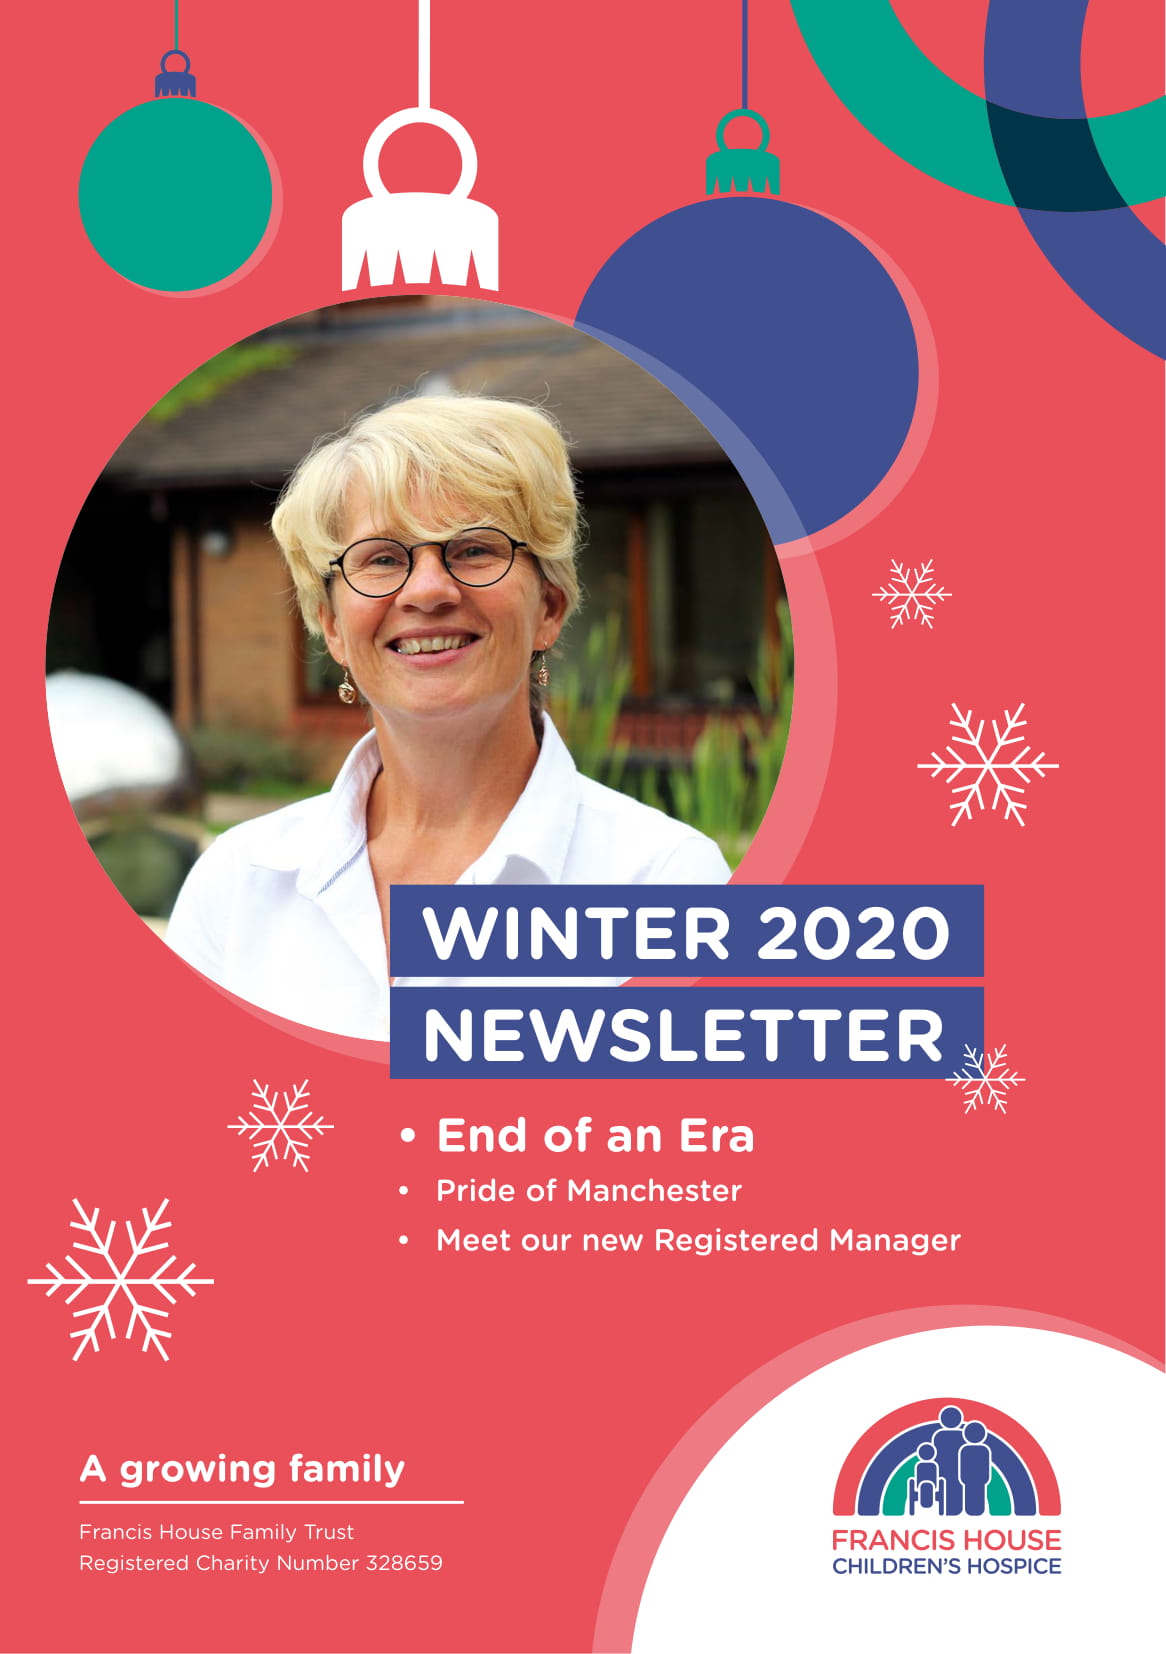 Winter 2020 newsletter cover